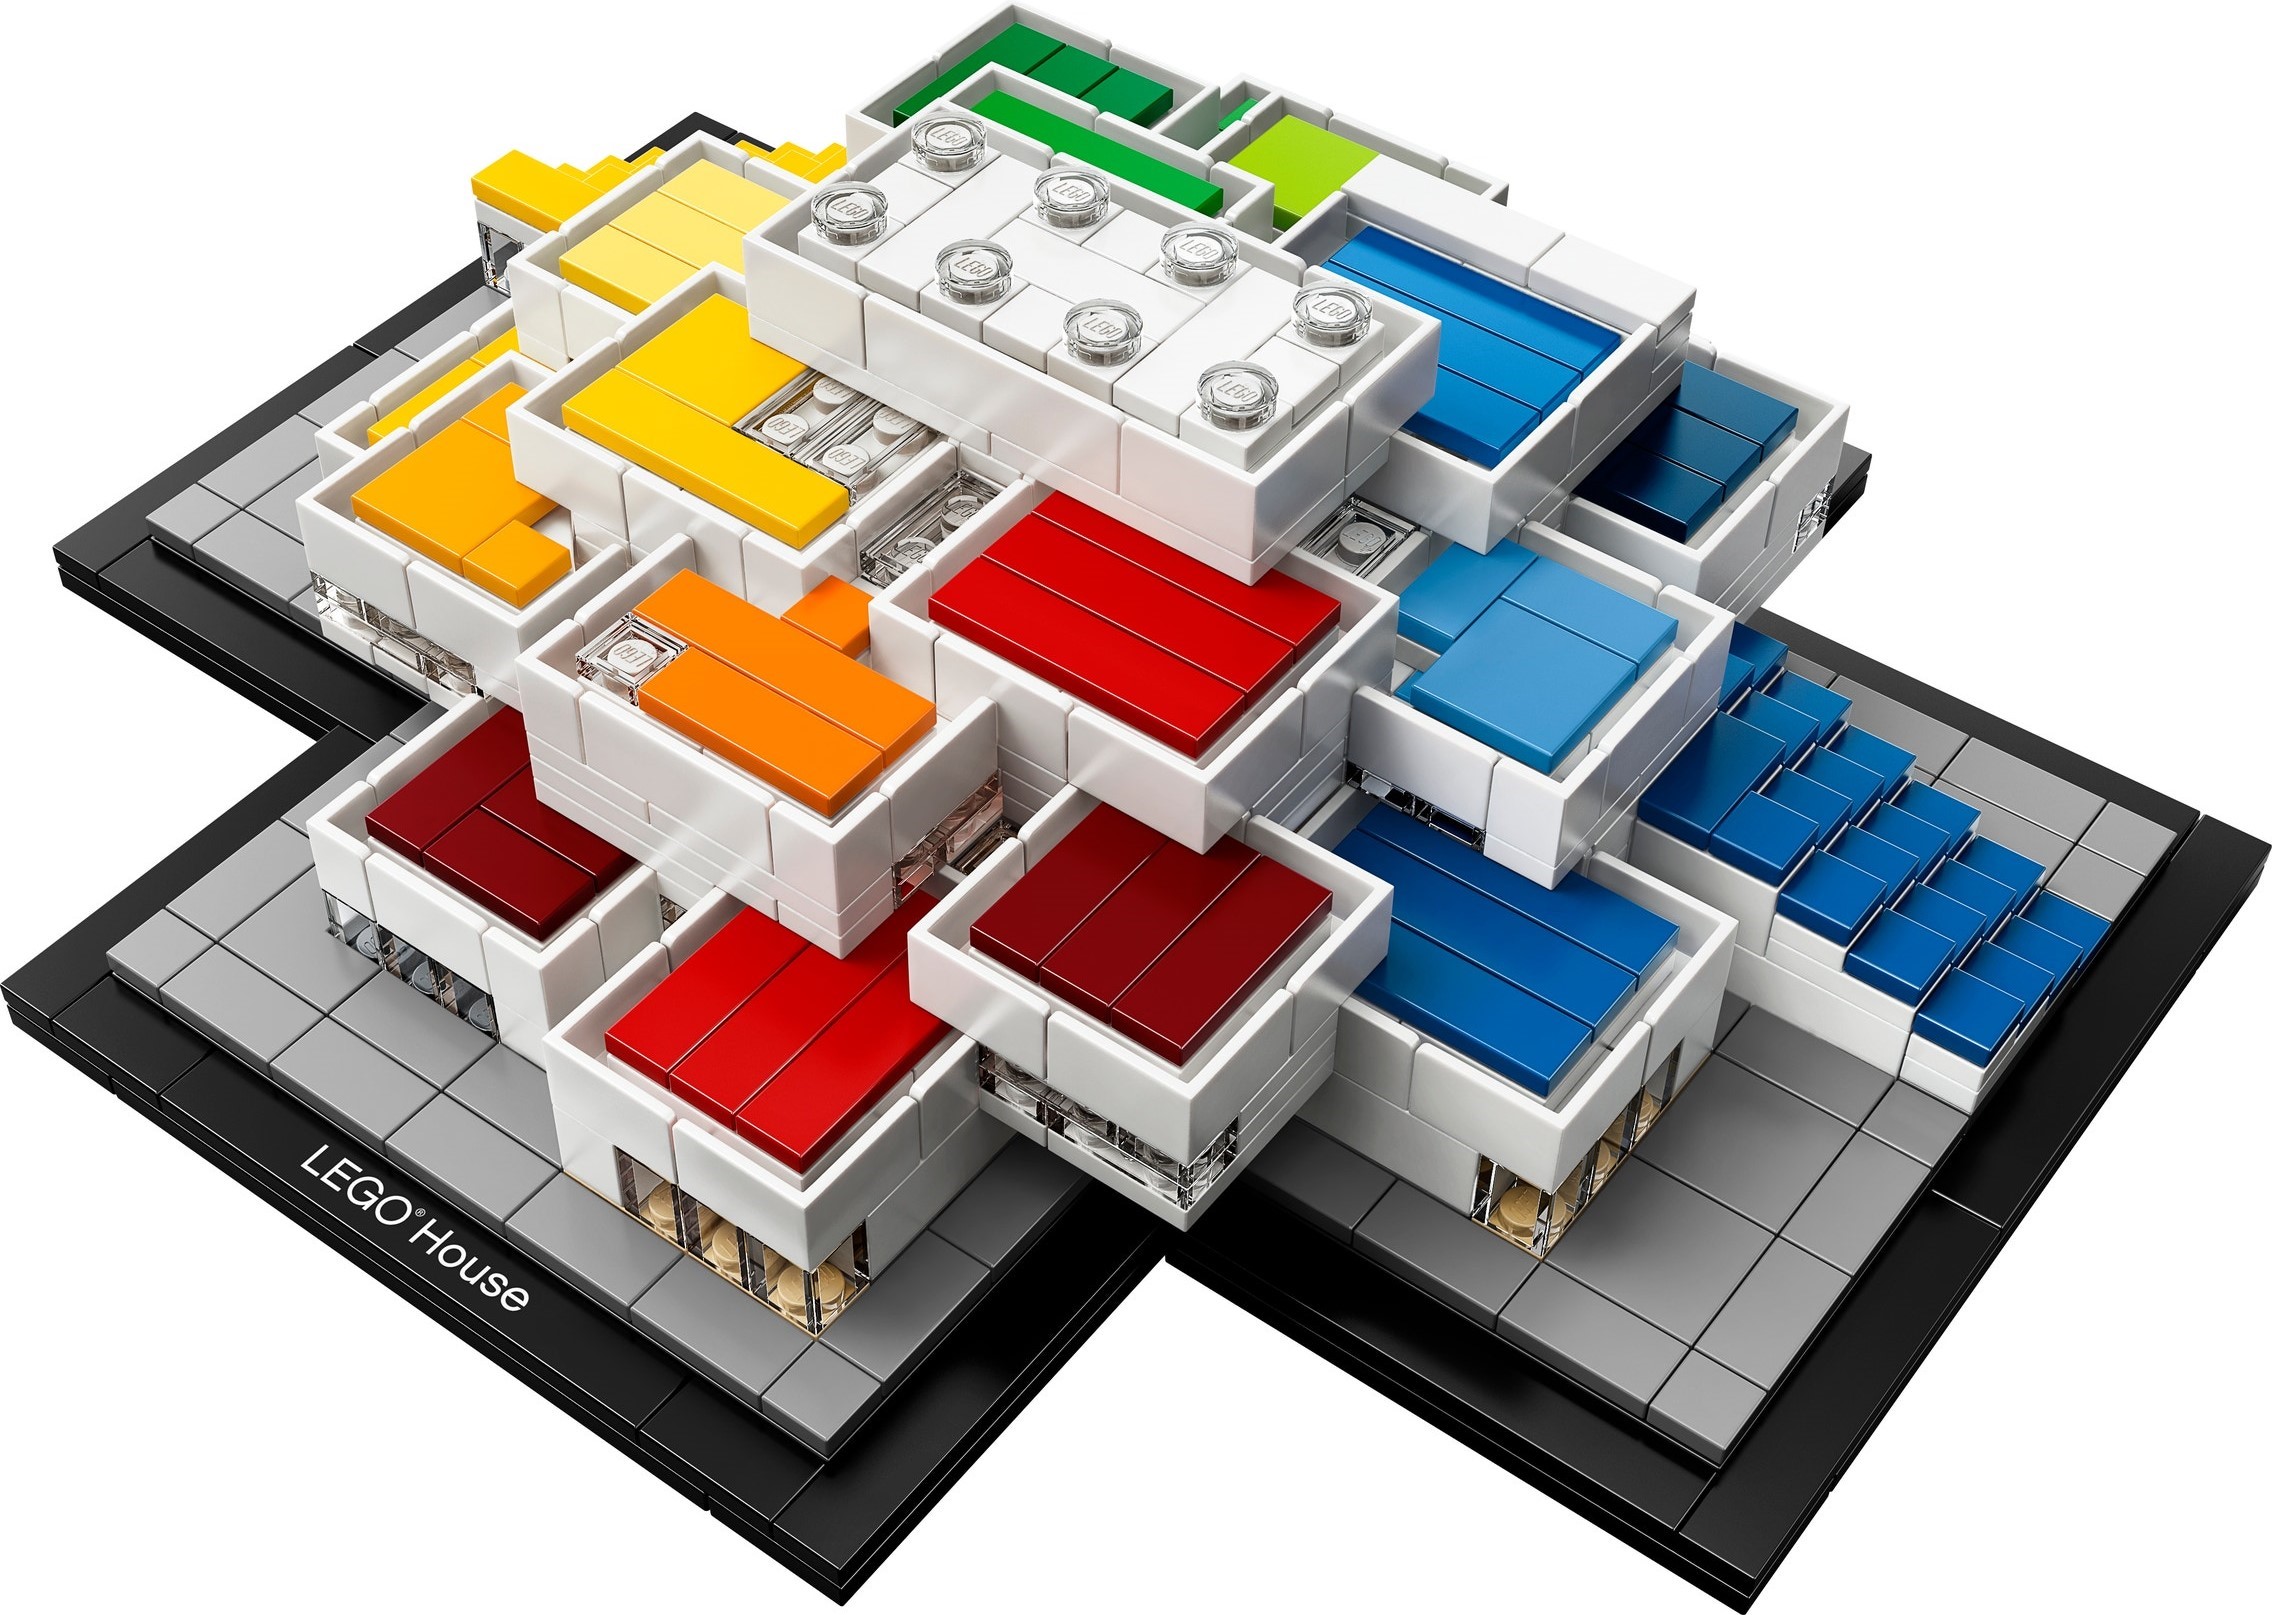 New LEGO House set revealed Brickset